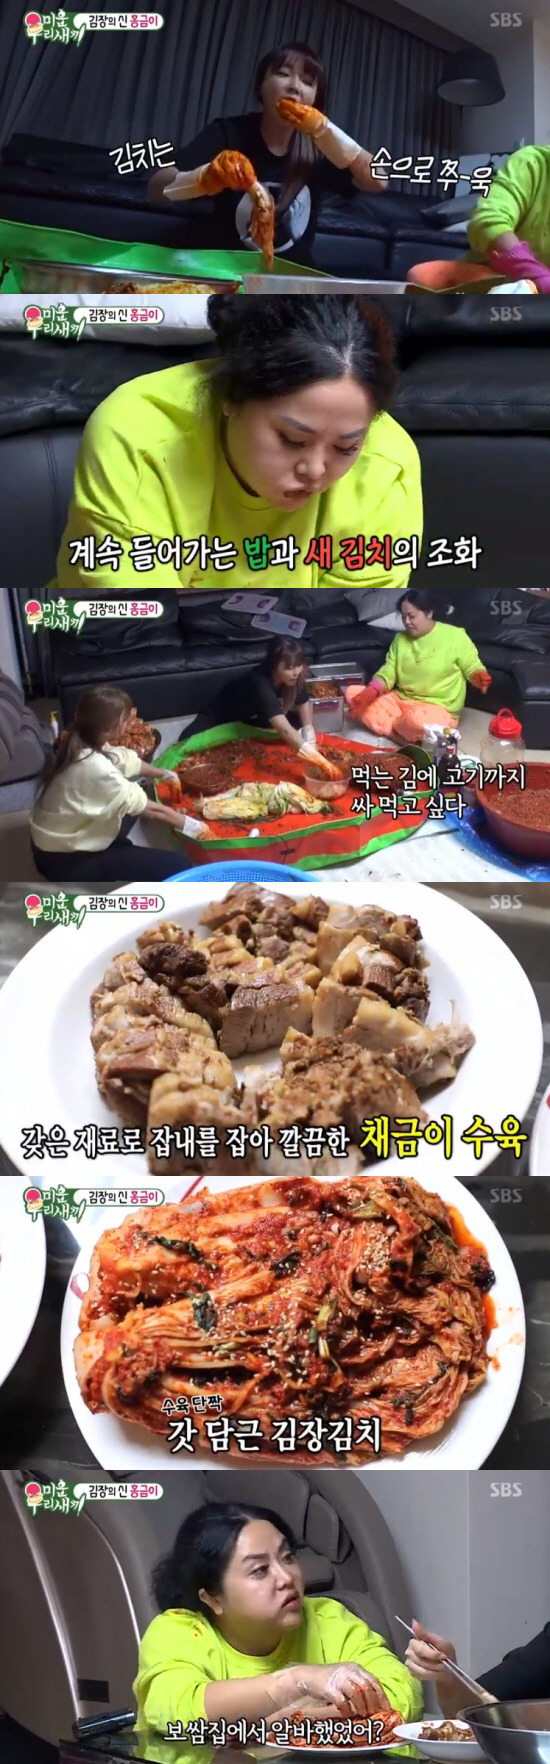 지난 1일 밤 방송된 SBS ‘미운 우리 새끼’ 홍자매 편에서는 한채영이 홍자매에게 김장 비법을 전수 받는 모습이 방송됐다. (사진=방송화면)